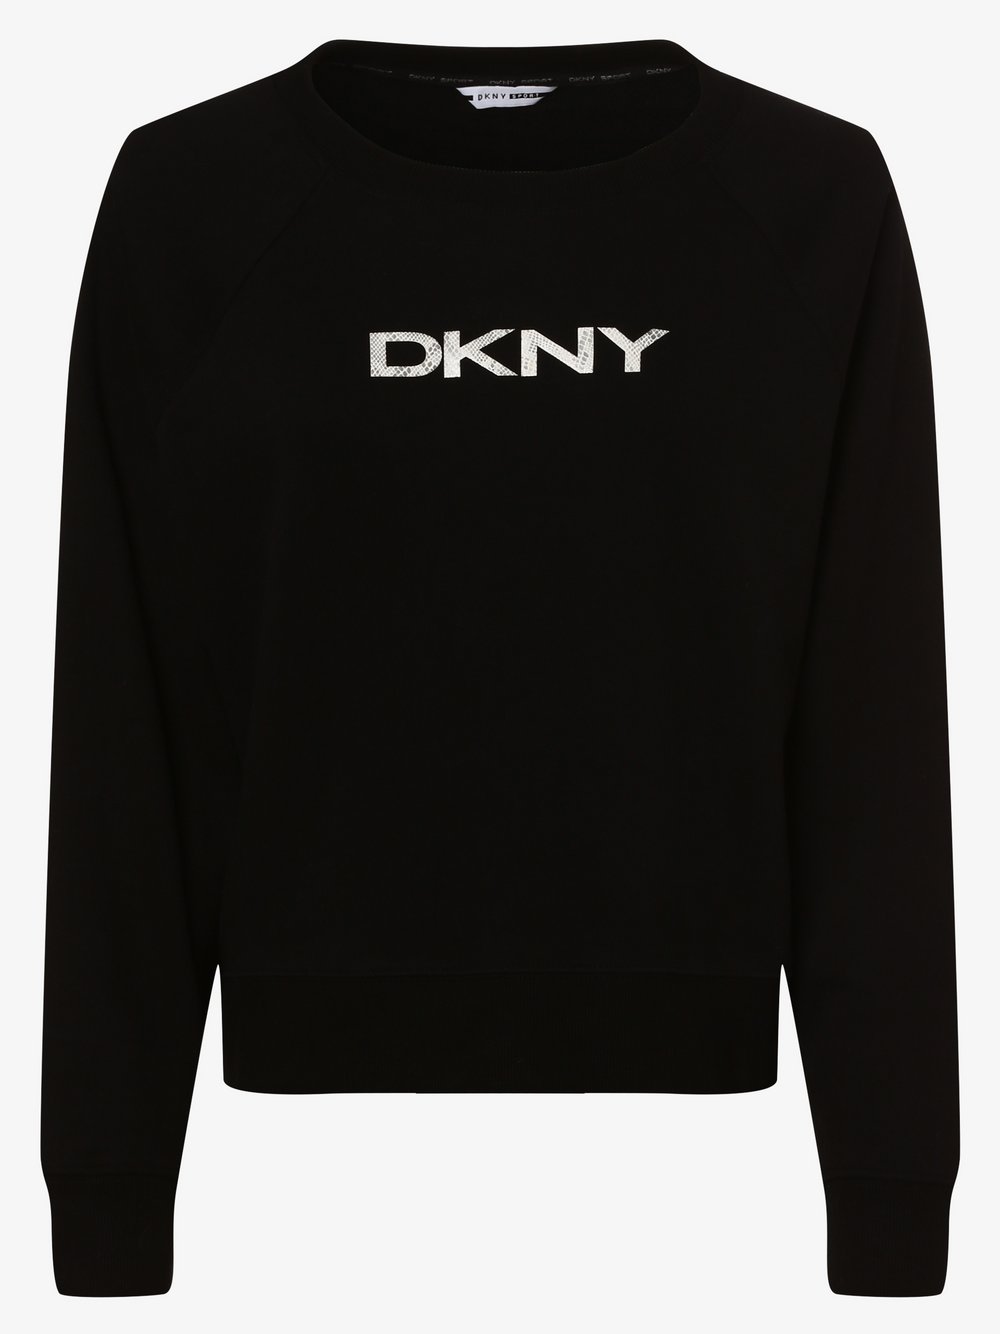 DKNY - Damska bluza nierozpinana, czarny